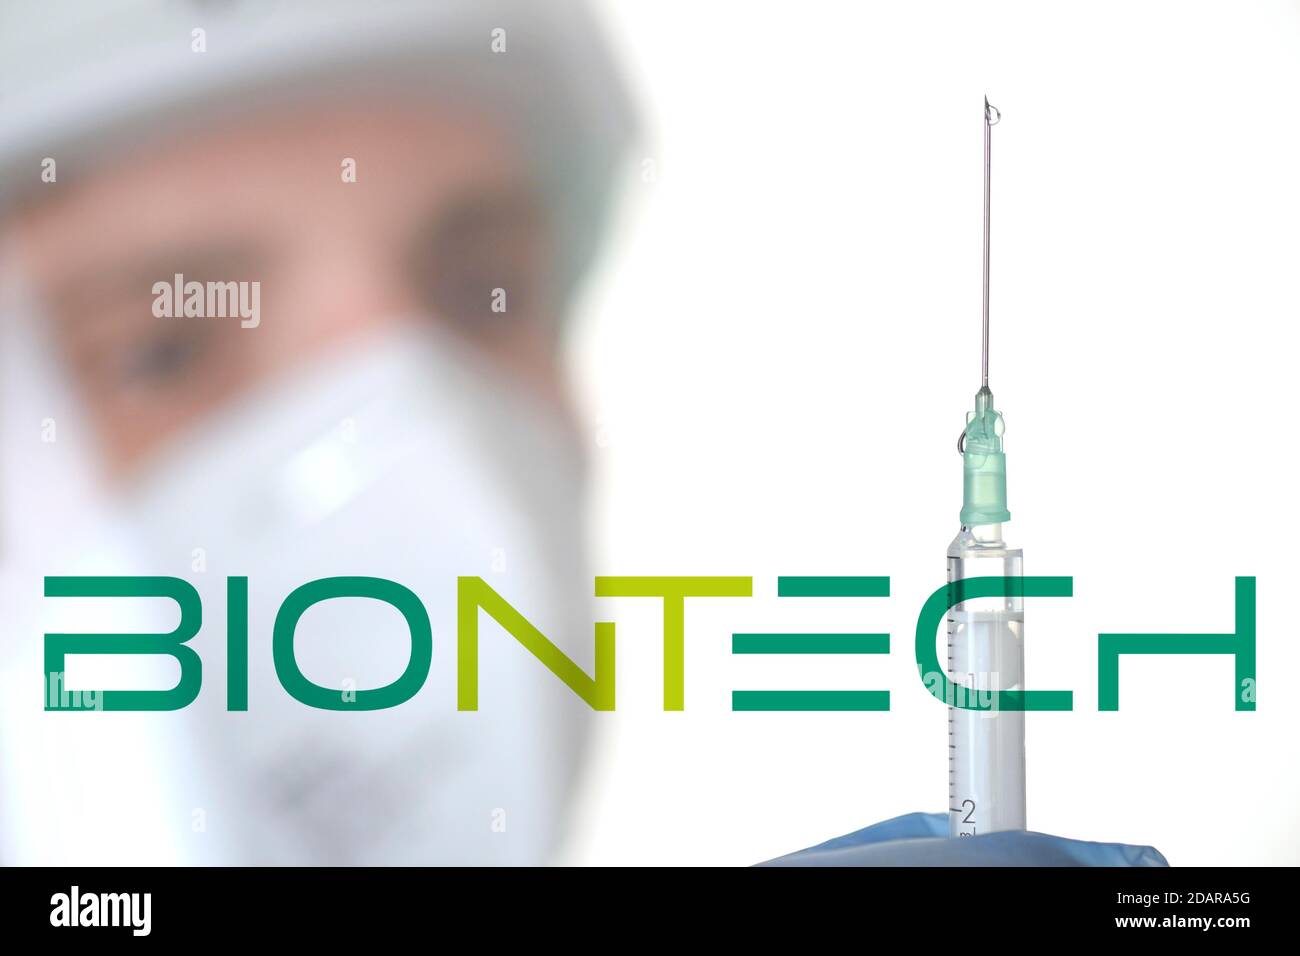 Image symbole vaccin Corona de BIONTECH, homme avec seringue, crise corona, Bade-Wurtemberg, Allemagne Banque D'Images